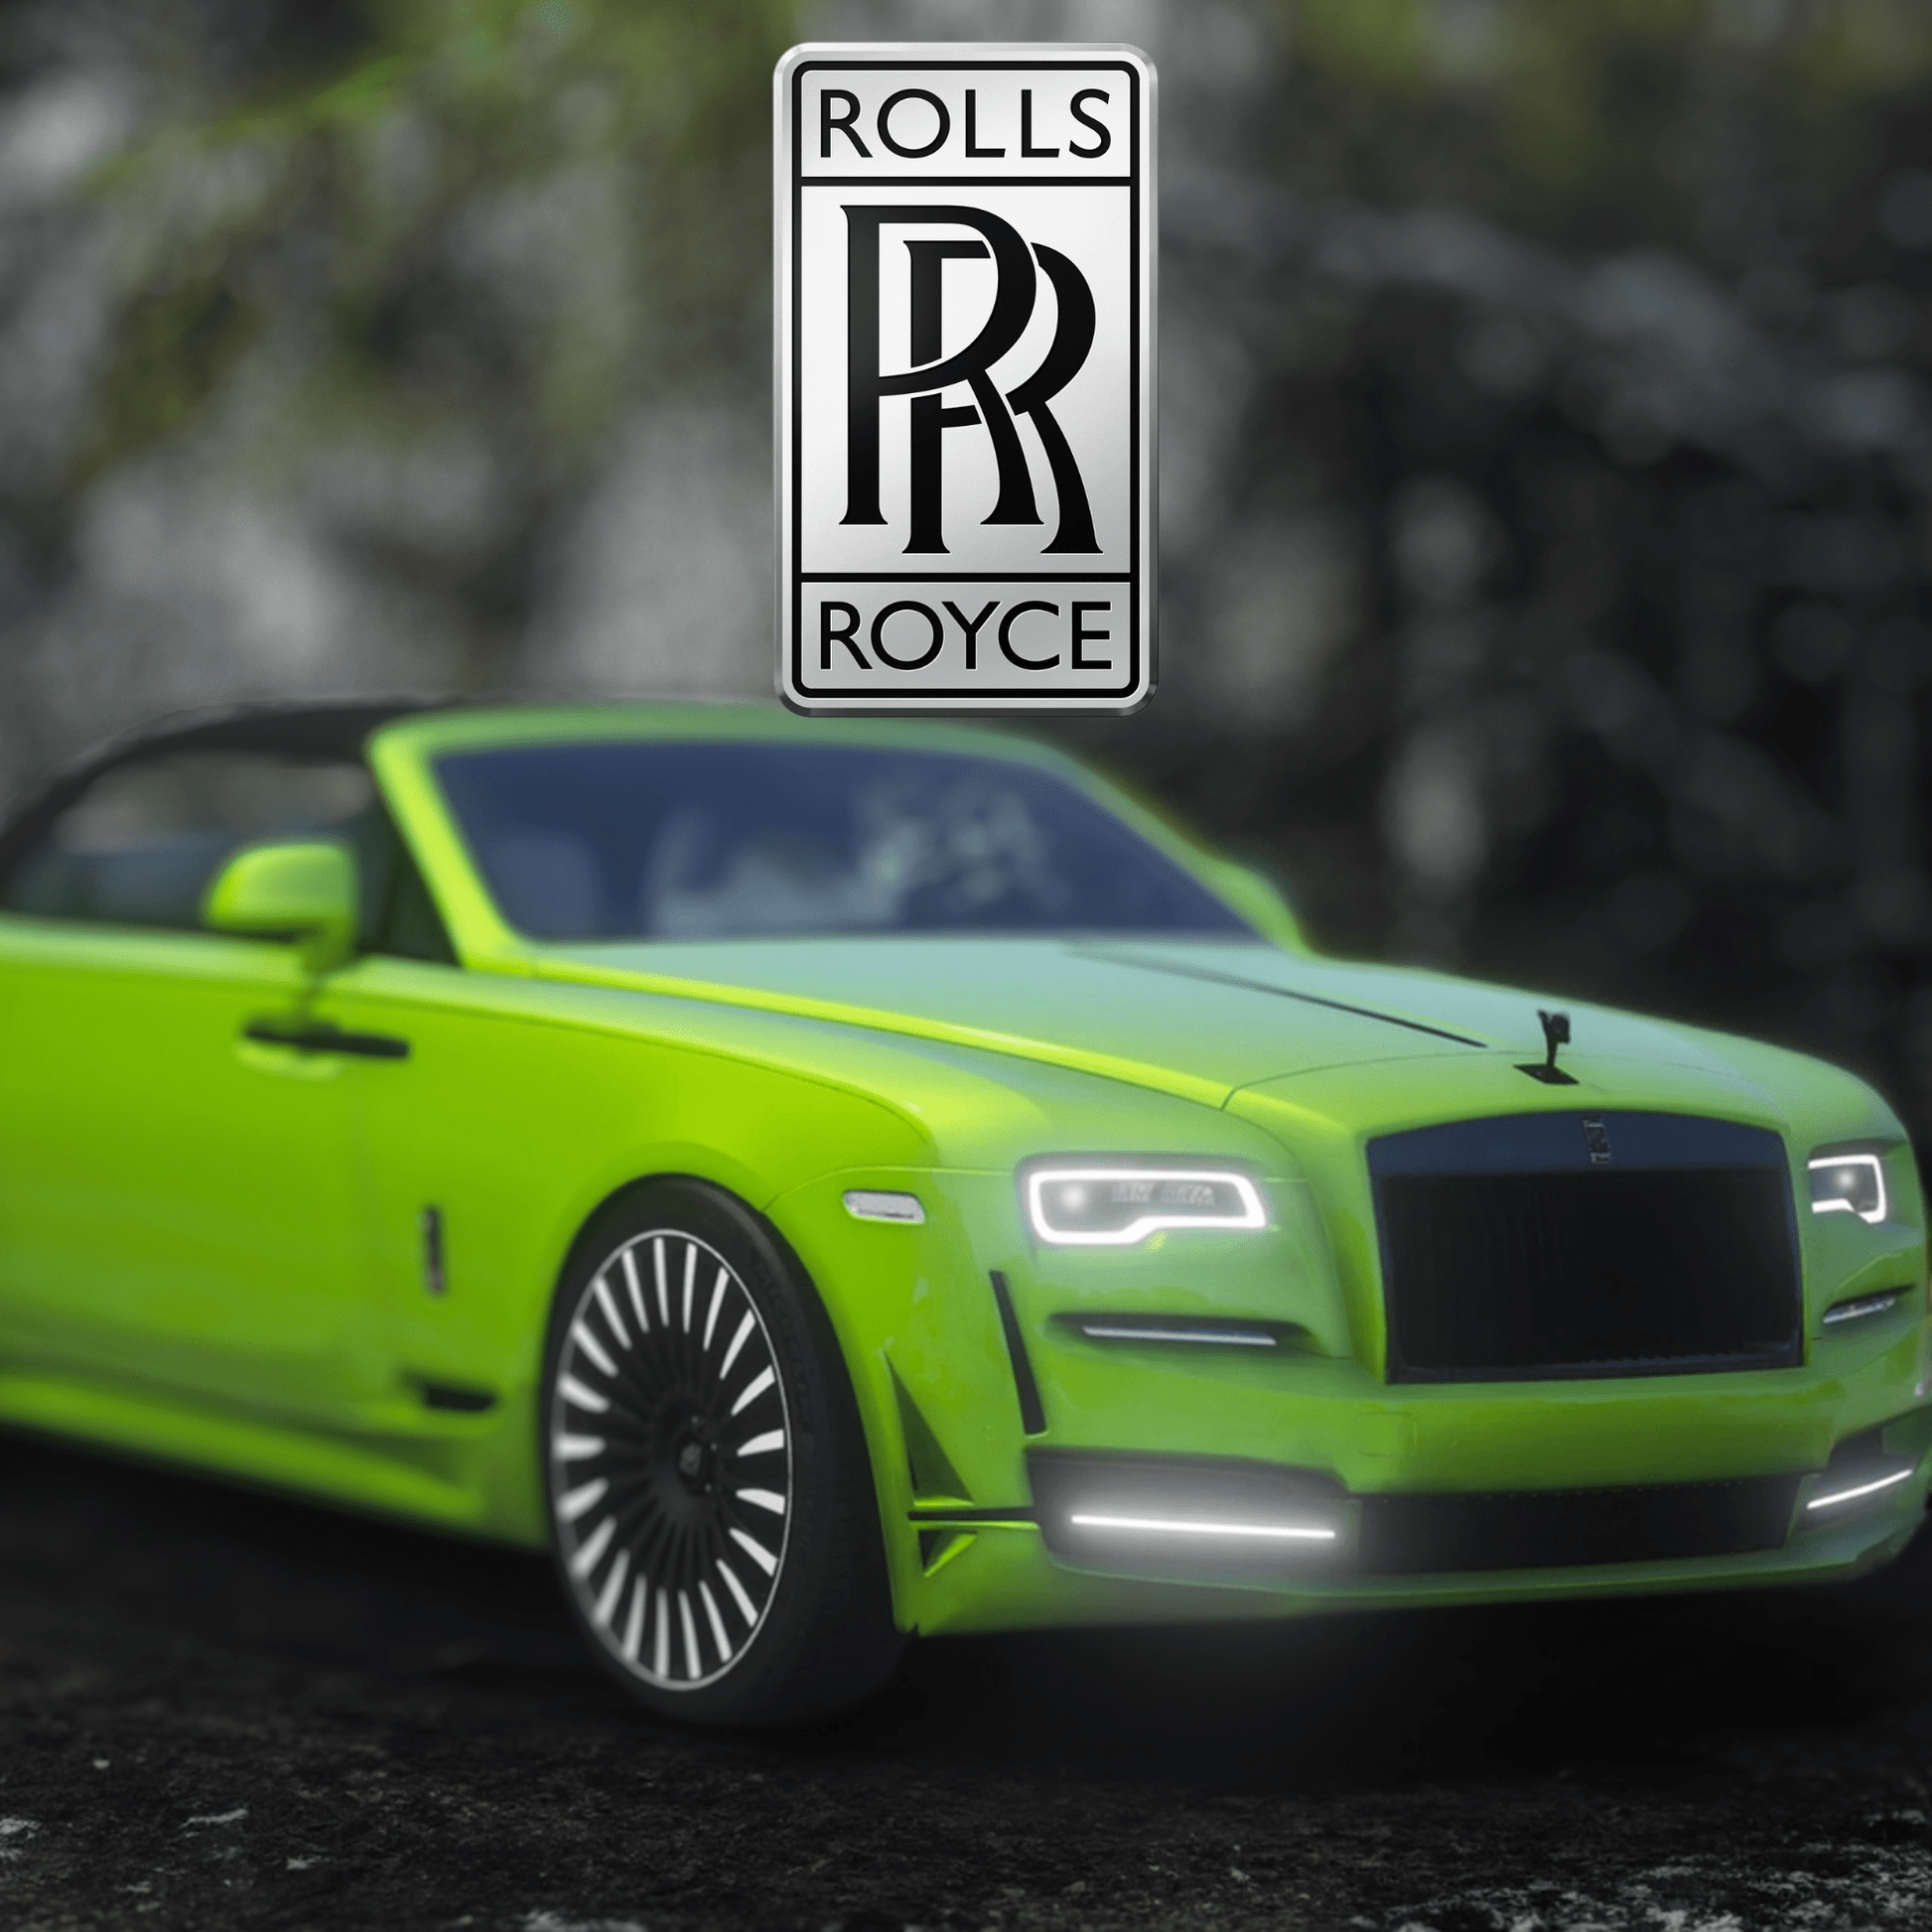 FiveM 5 Rolls-Royce Car Pack - DigitalLatvia